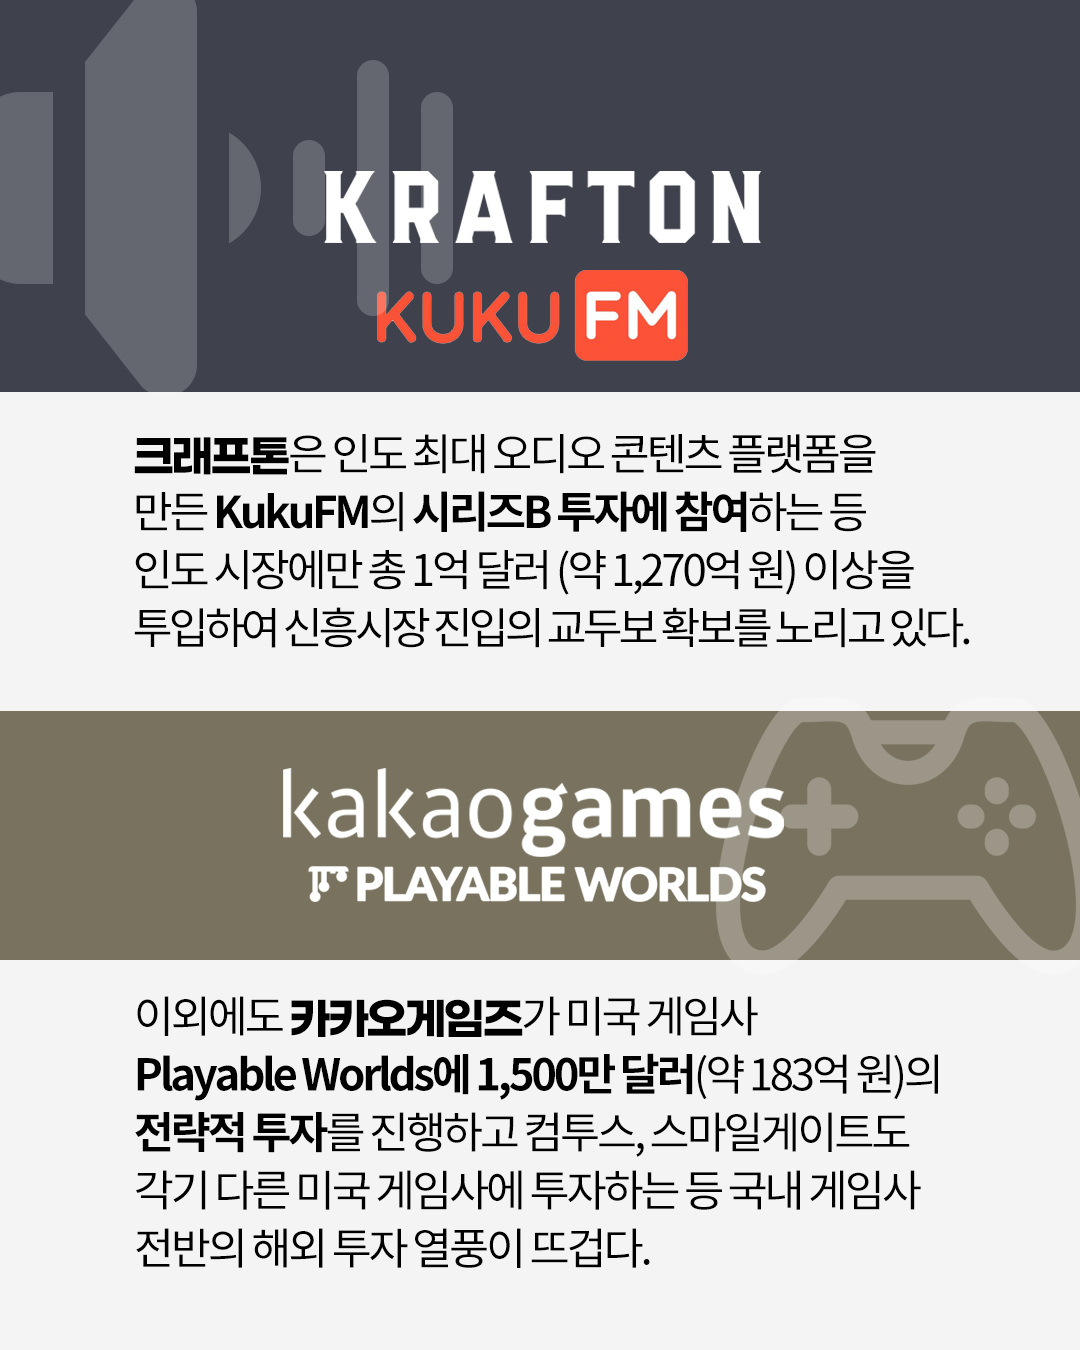 크래프톤은 인도 최대 오디오 콘텐츠 플랫폼을 만든 KukuFM의 시리즈B 투자에 참여하는 등 총 1억 달러(약 1,270억 원) 이상을 투입하여 신흥시장 진입의 교두보 확보를 노리고 있다.
이외에도 카카오게임즈가 미국 게임사 Playable Worlds에 1,500만 달러(약 183억 원)의 전략적 투자를 진행하고 컴투스, 스마일게이트도 각기 다른 미국 게임사에 투자하는 등 국내 게임사 전반의 해외 투자 열풍이 뜨겁다.